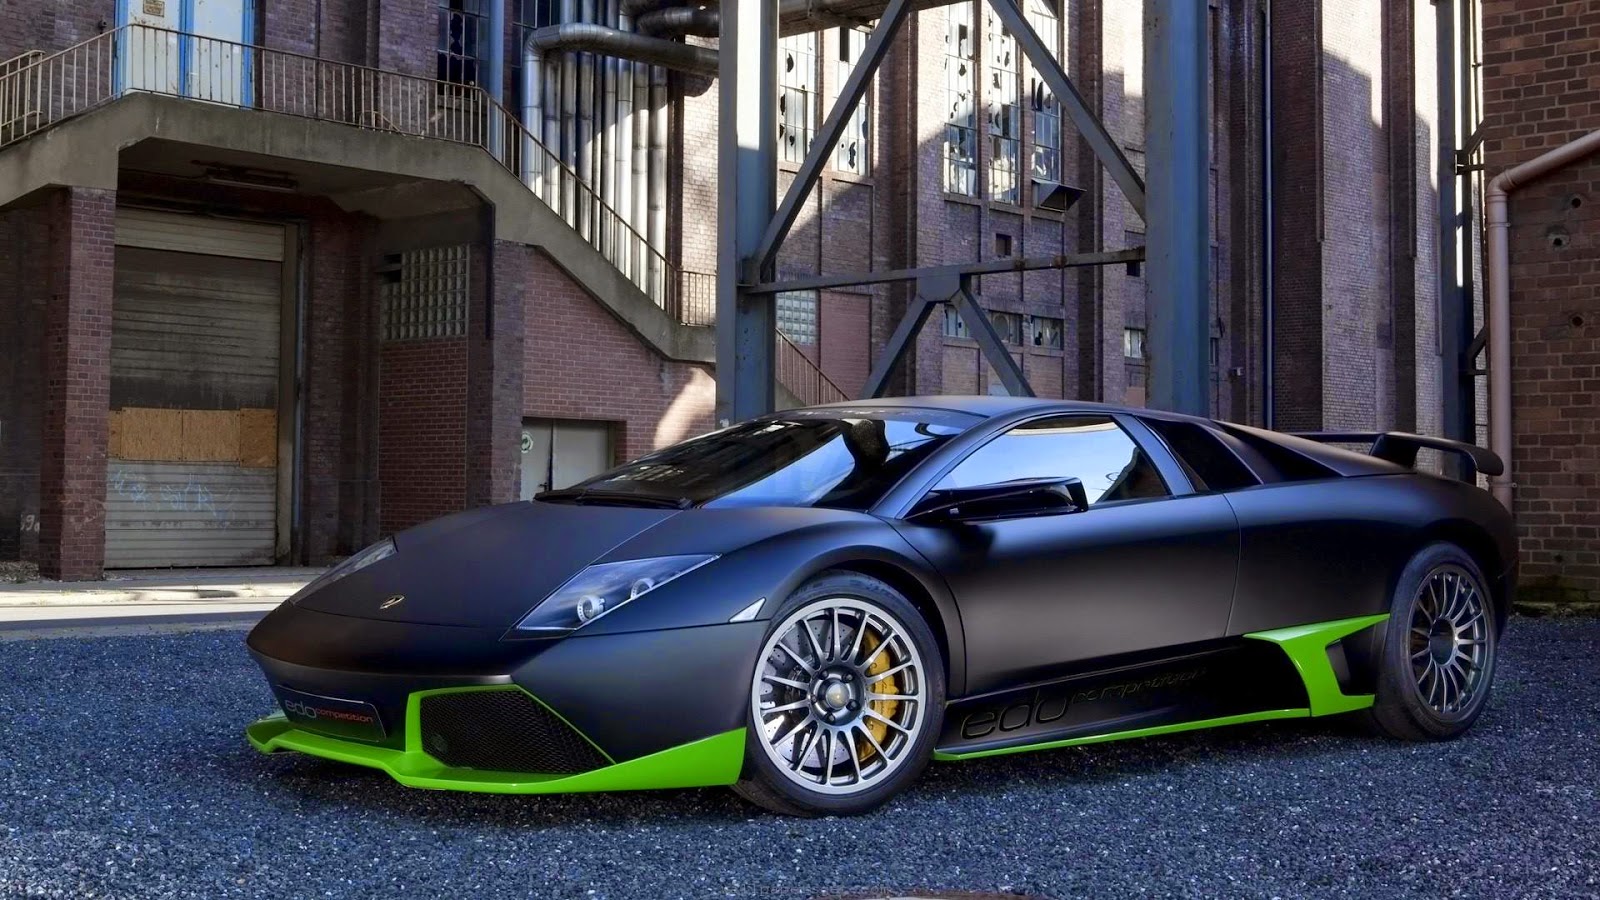 Modifikasi Mobil Sedan Ala Lamborghini Terbaru Sobat Modifikasi